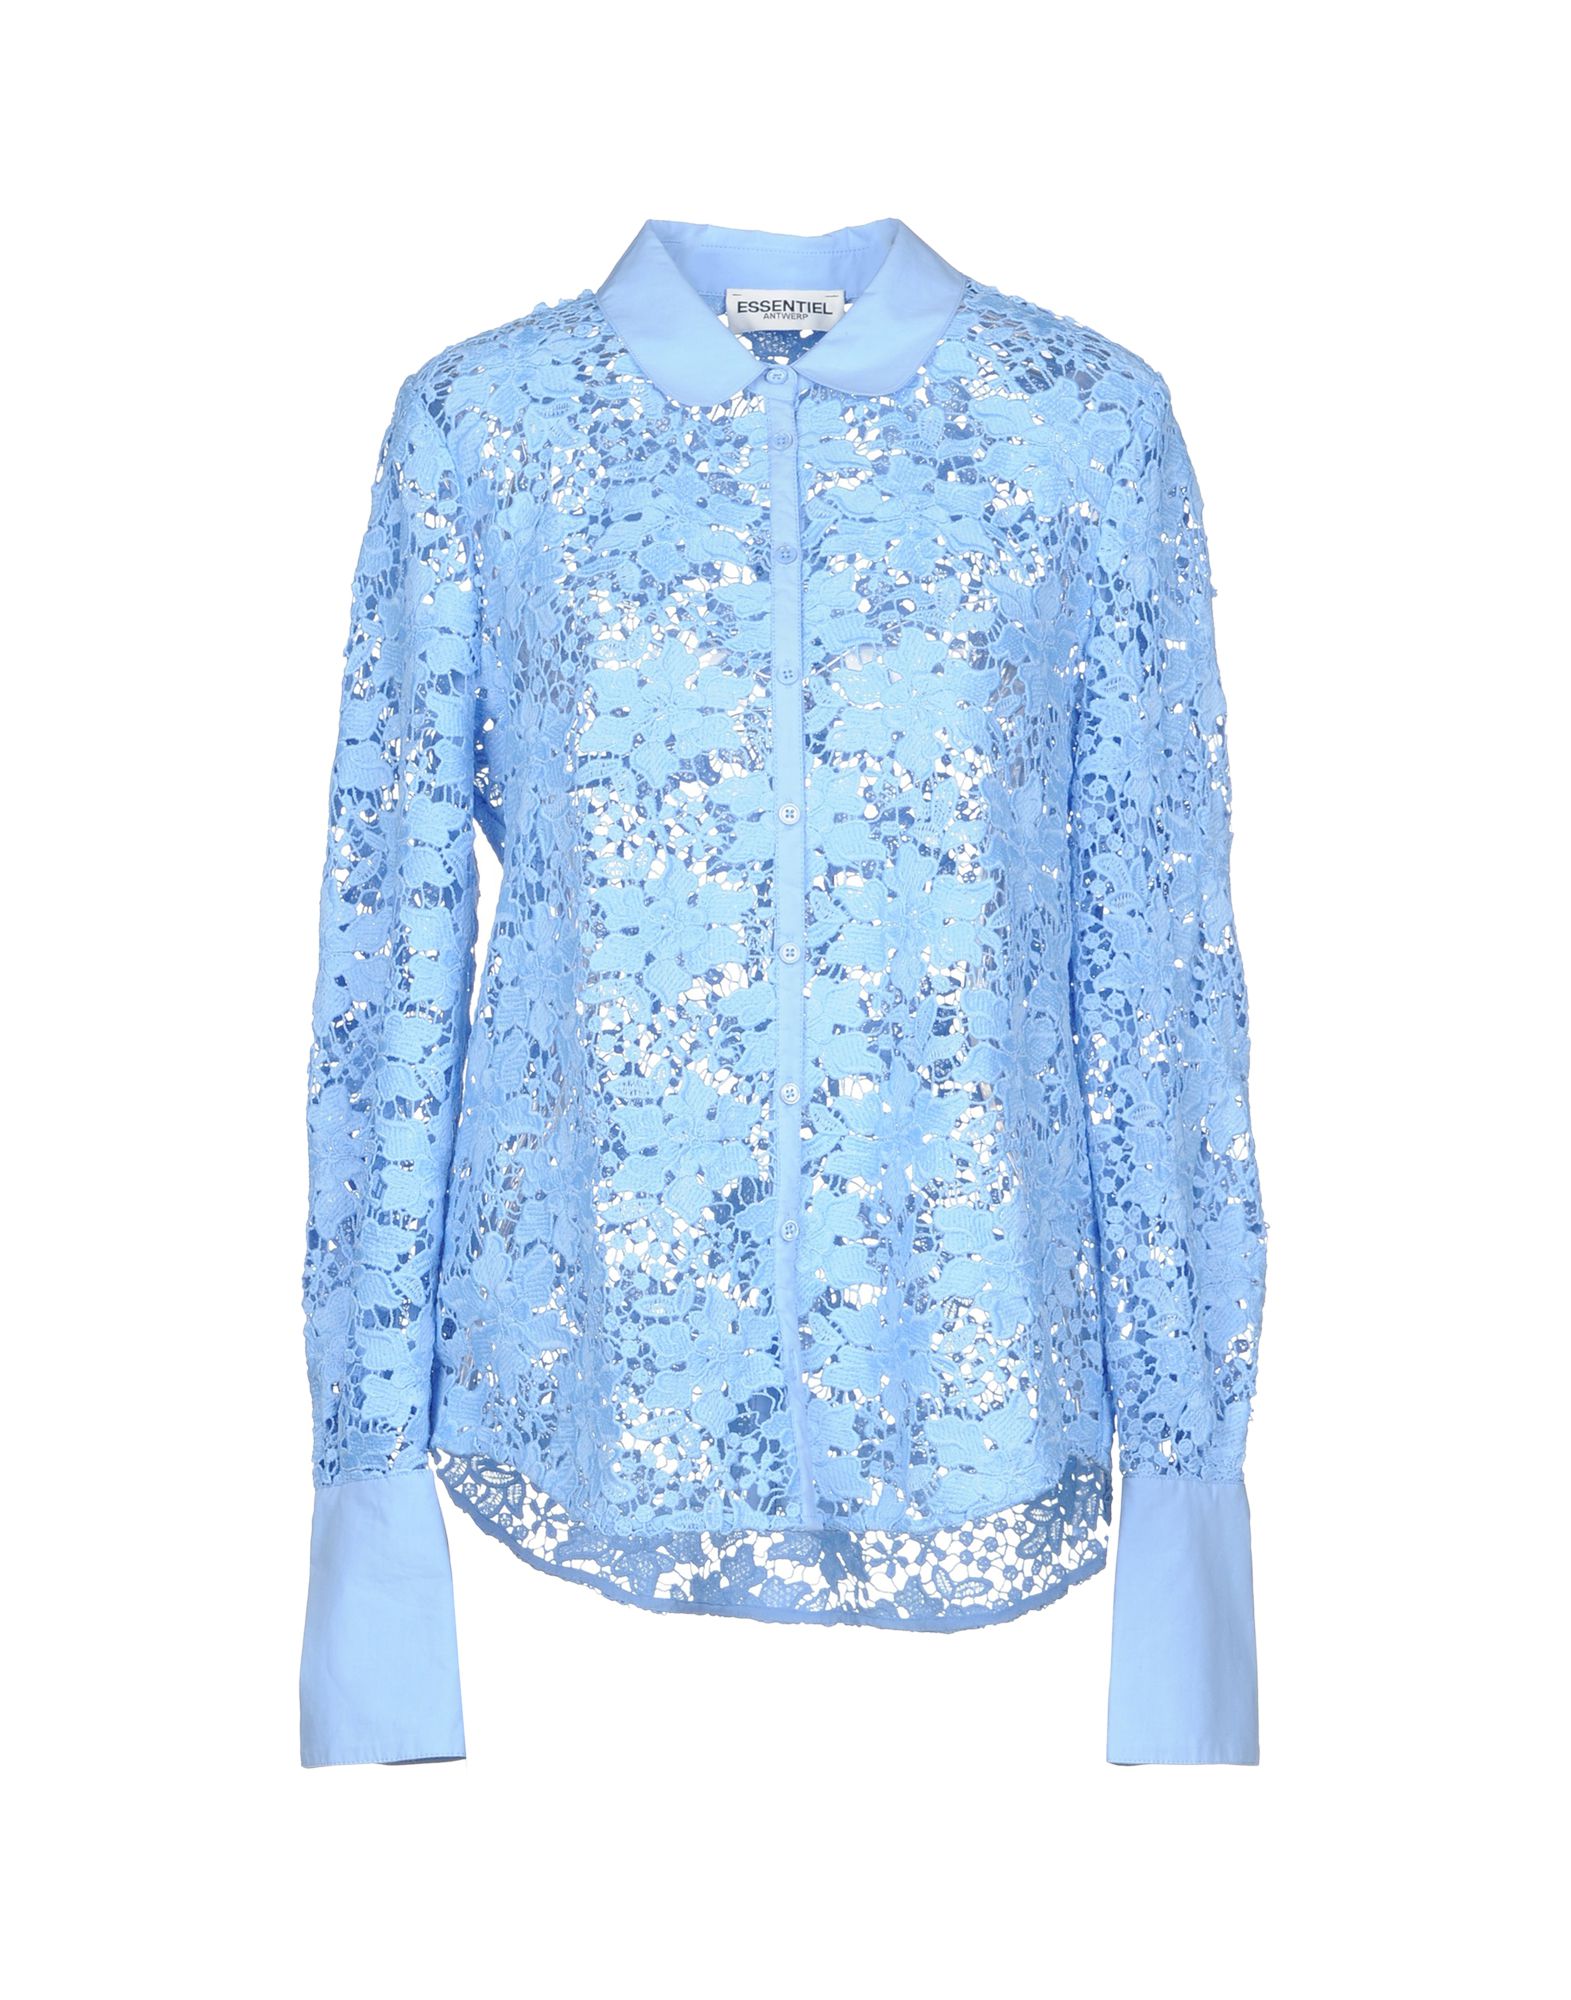 ESSENTIEL ANTWERP Lace shirts & blouses,38745382TG 3